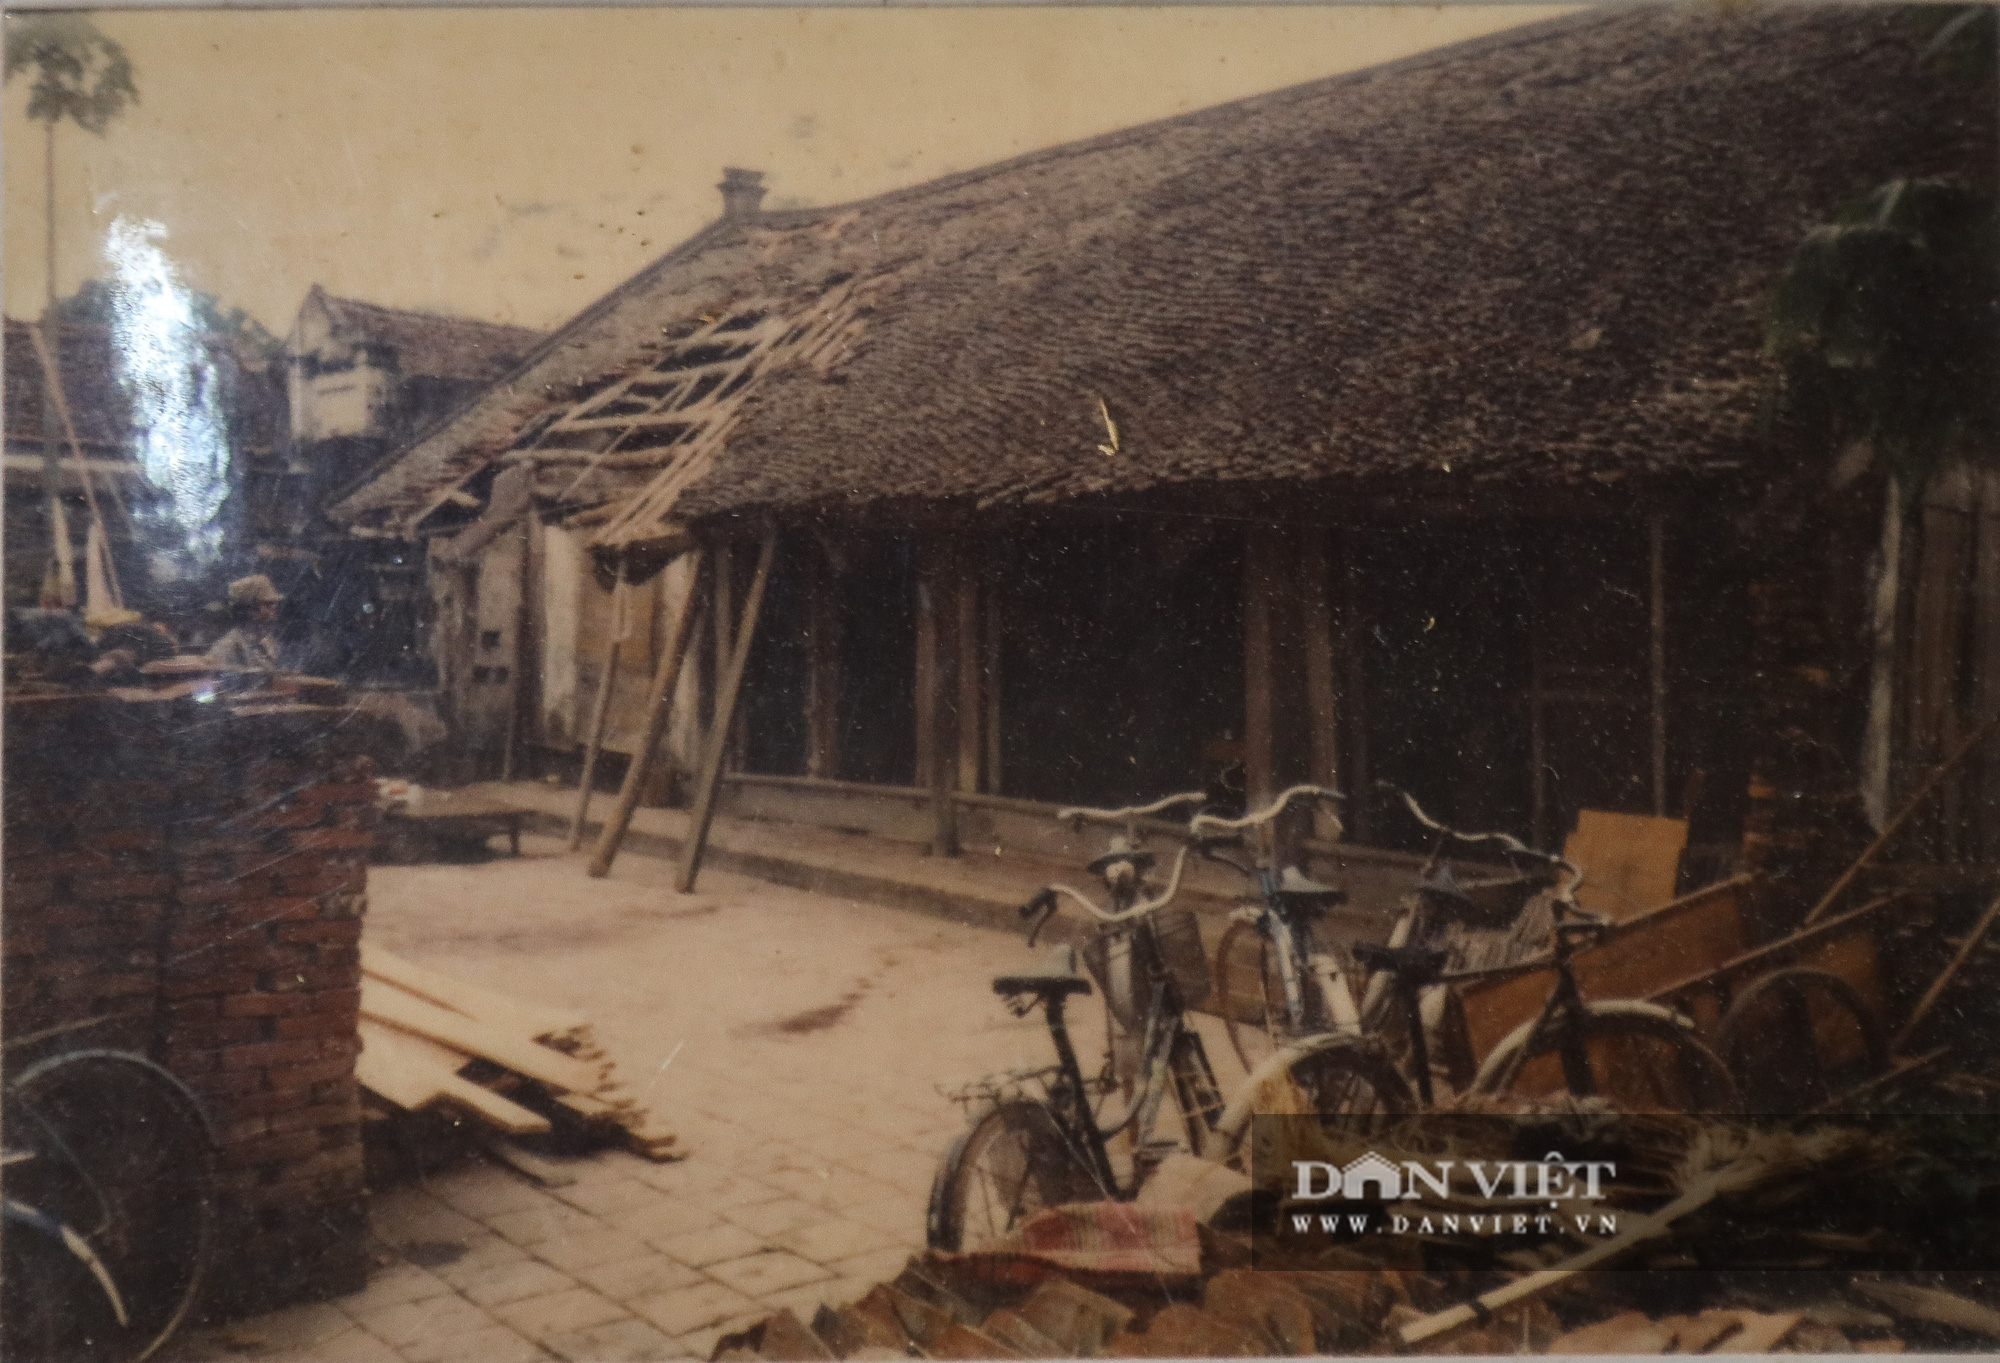 Kỳ lạ ngôi nhà xây mất 1 đêm, hơn 300 năm vẫn vững chãi ở Hà Nội - Ảnh 10.